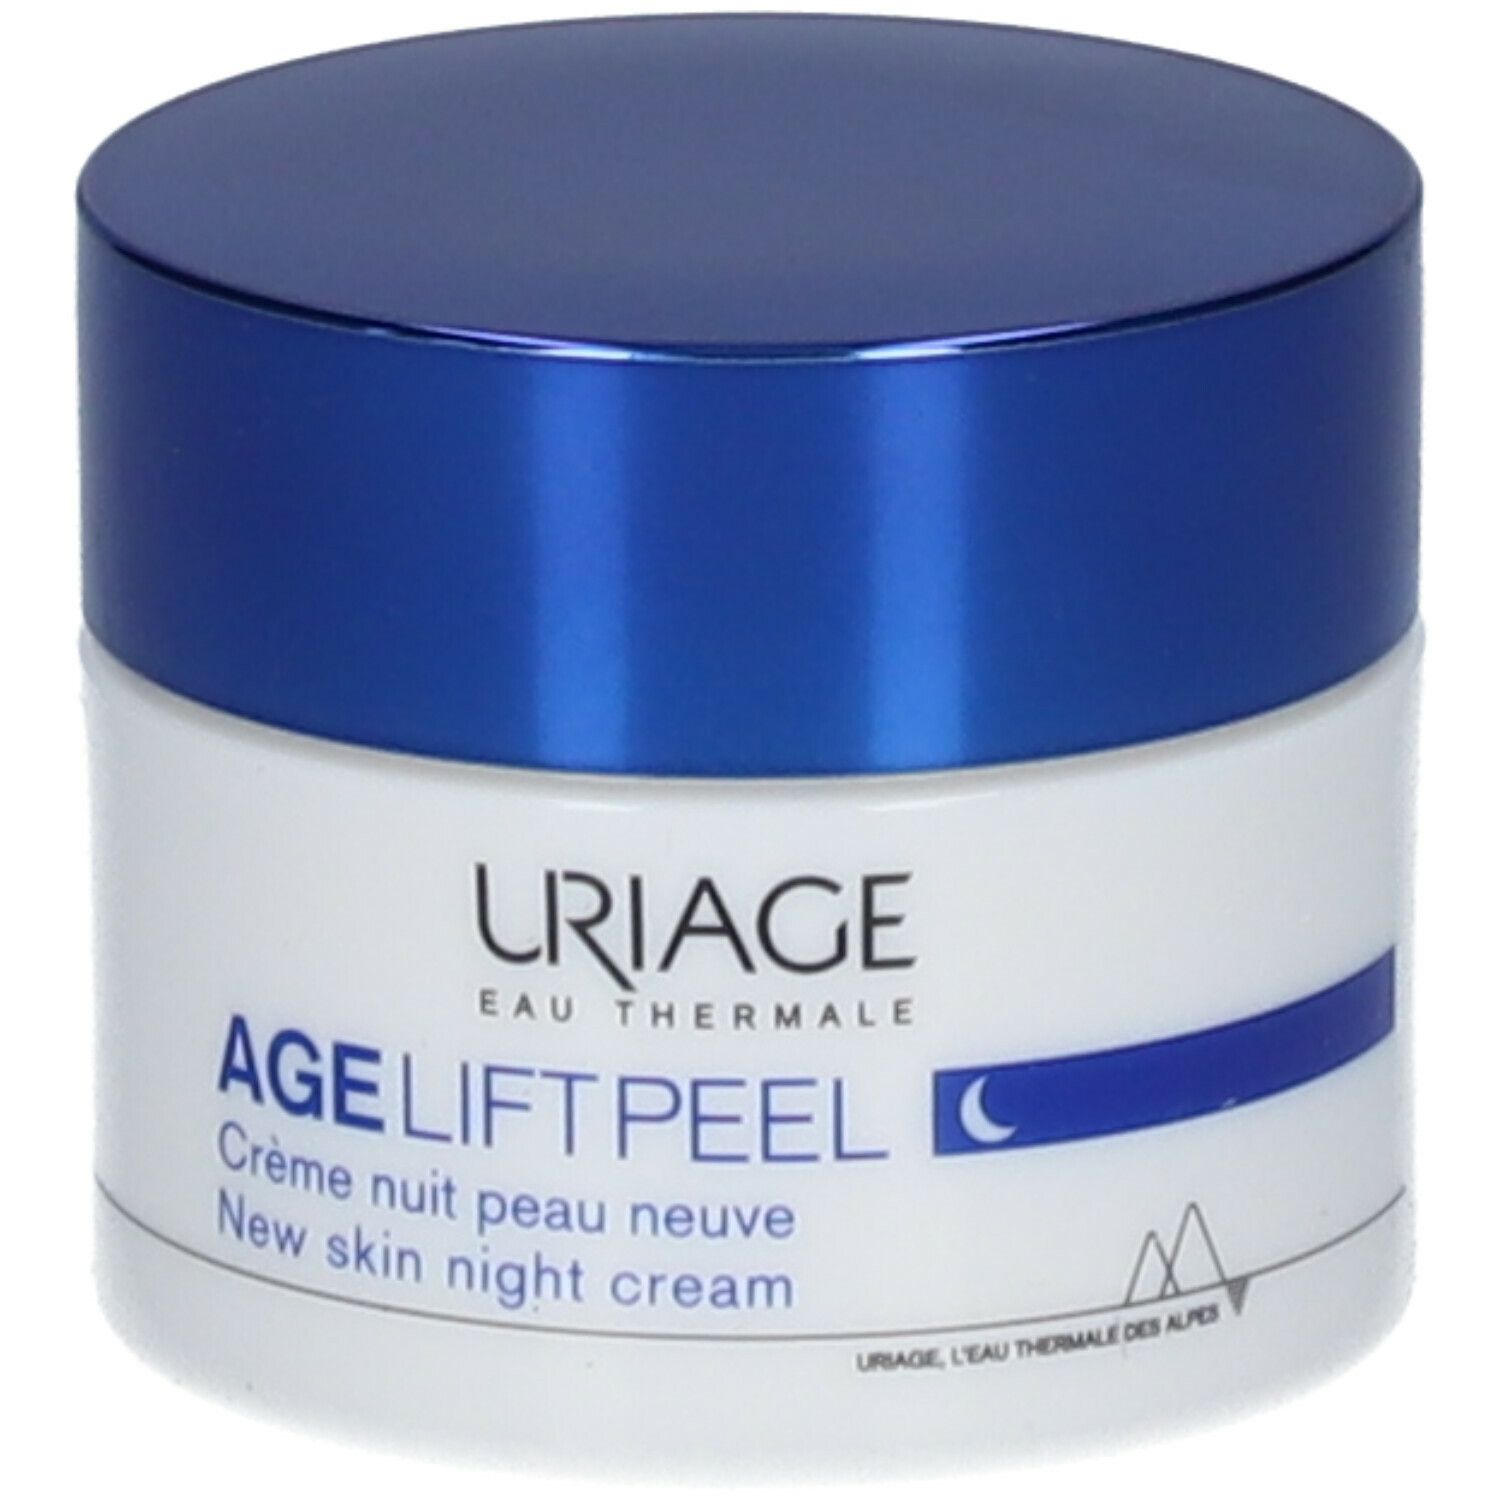 Uriage Age lift Crème nuit peau neuve